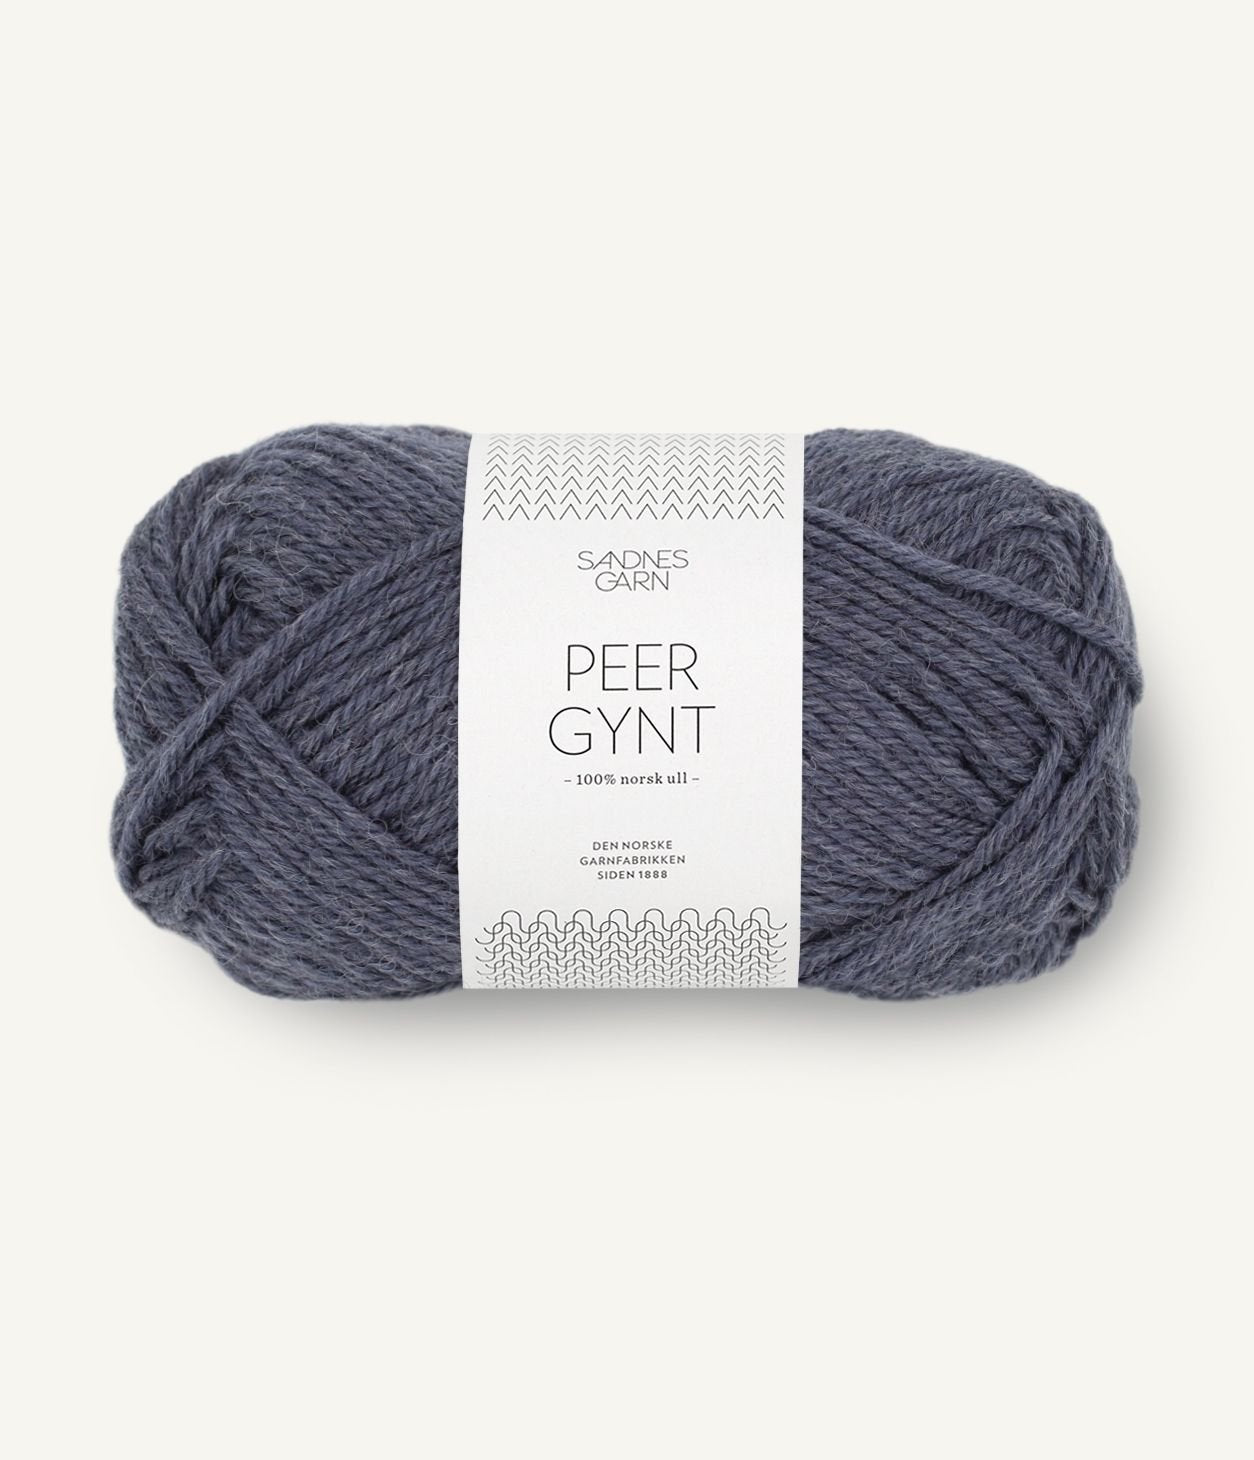 sandnes garn peer gynt yarn blue grey mix #6072